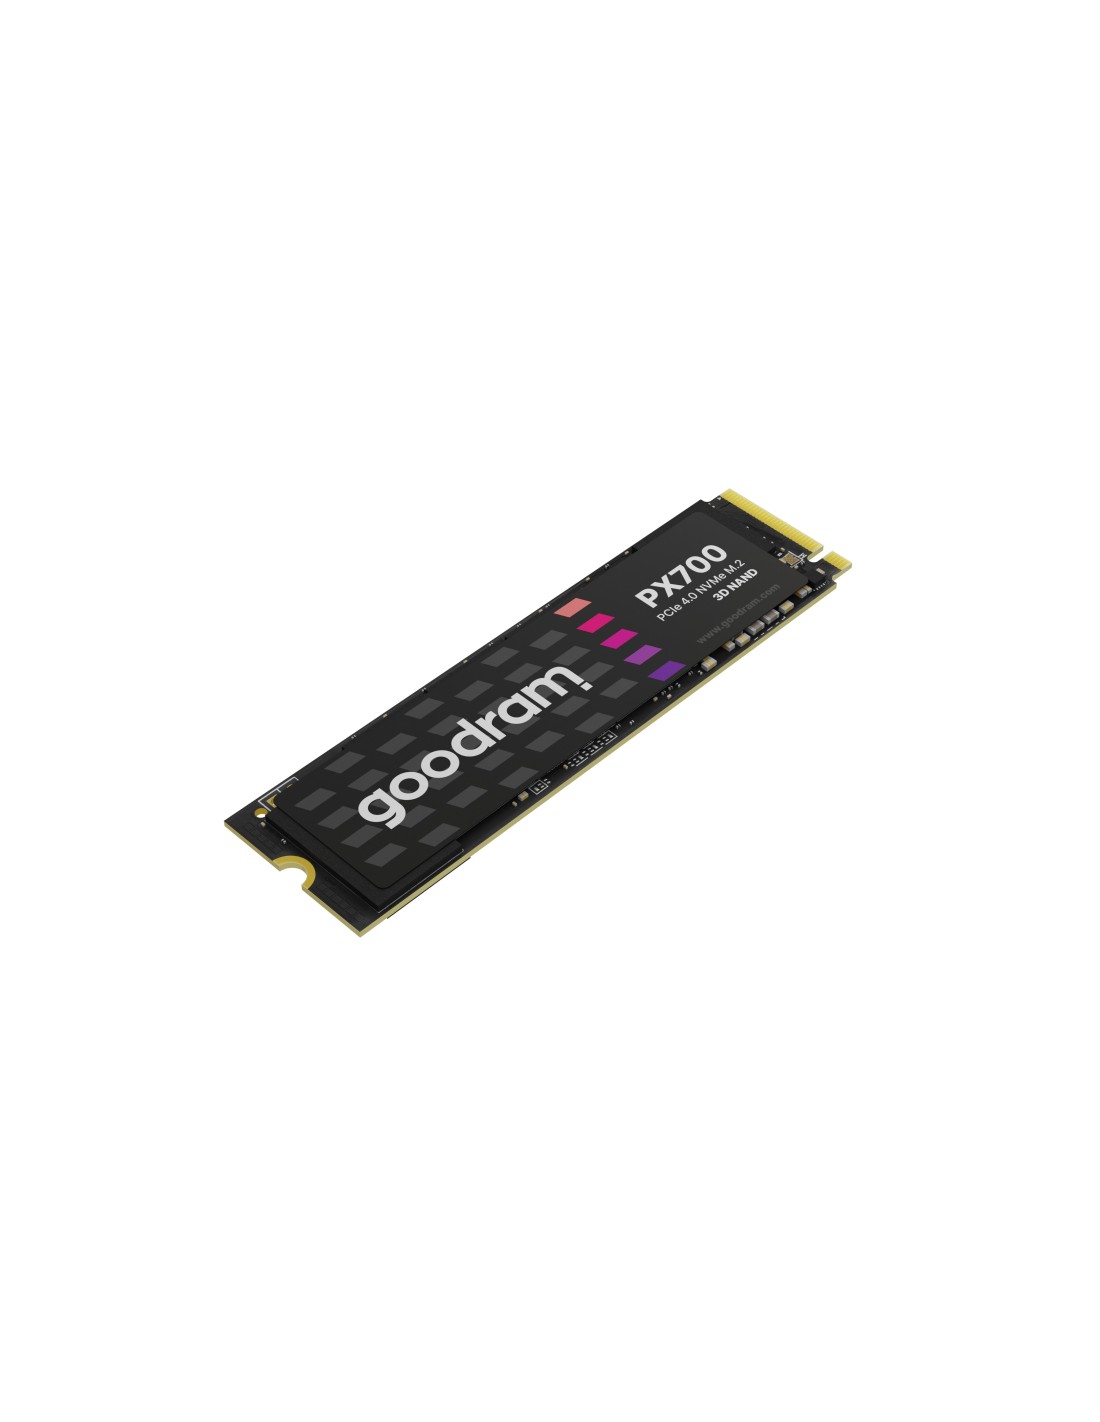 Goodram PX700 SSD SSDPR-PX700-01T-80 unidad de estado sólido M.2 1